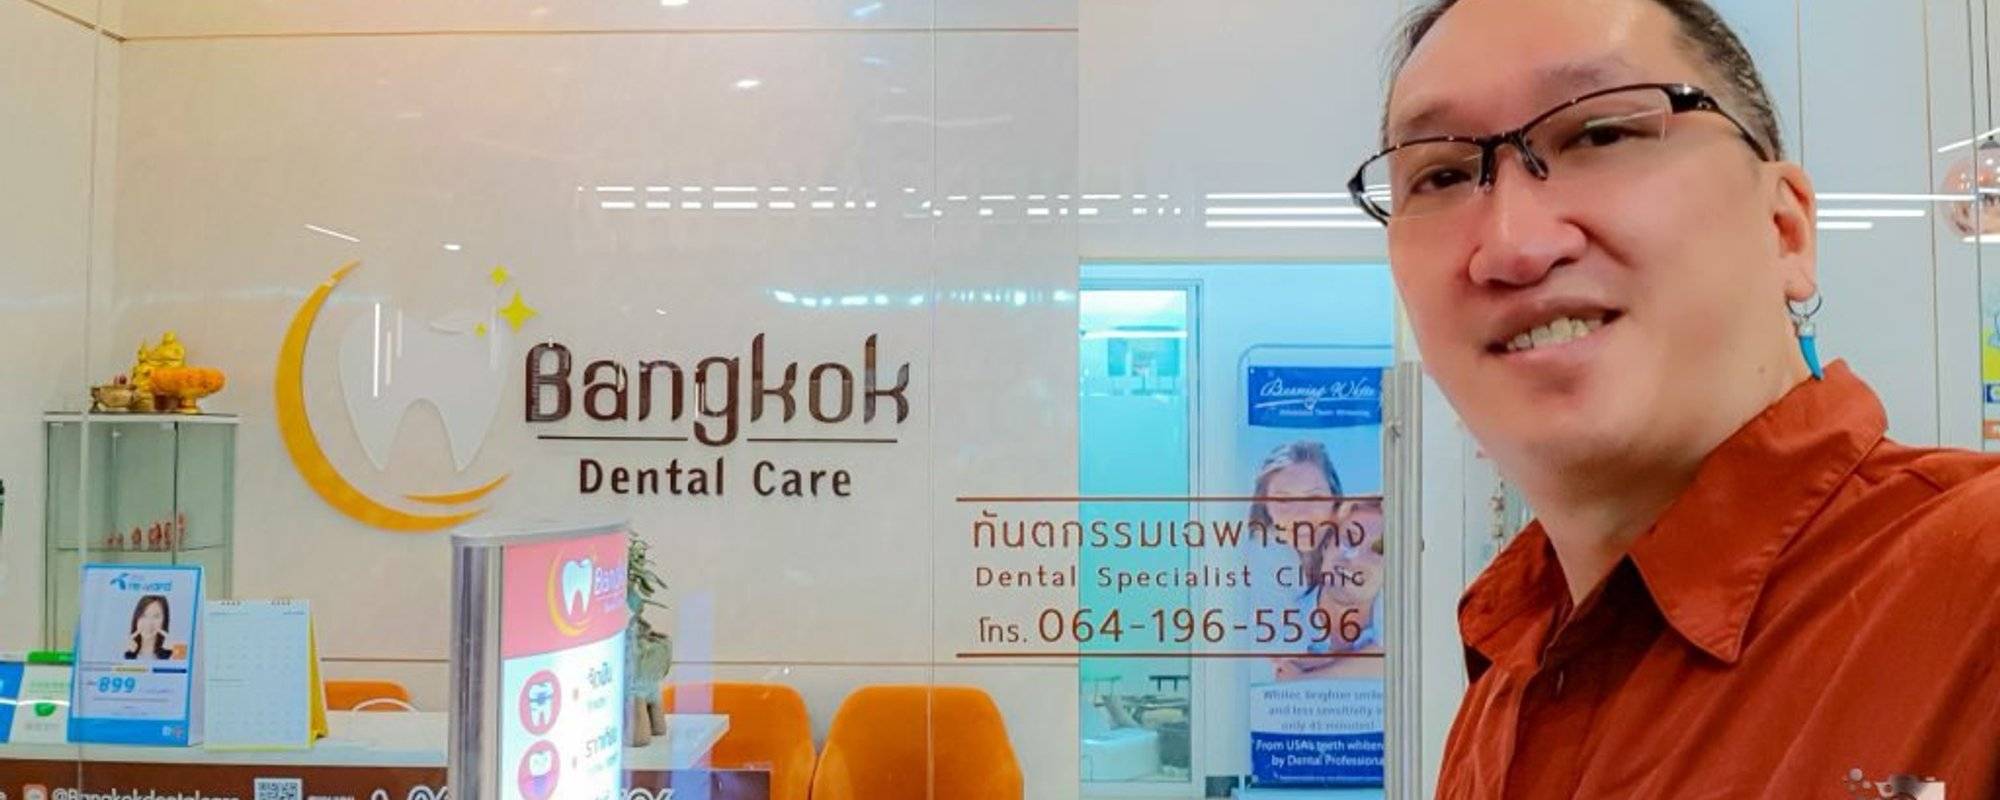 My experience at Bangkok Dental Care, another dental holiday